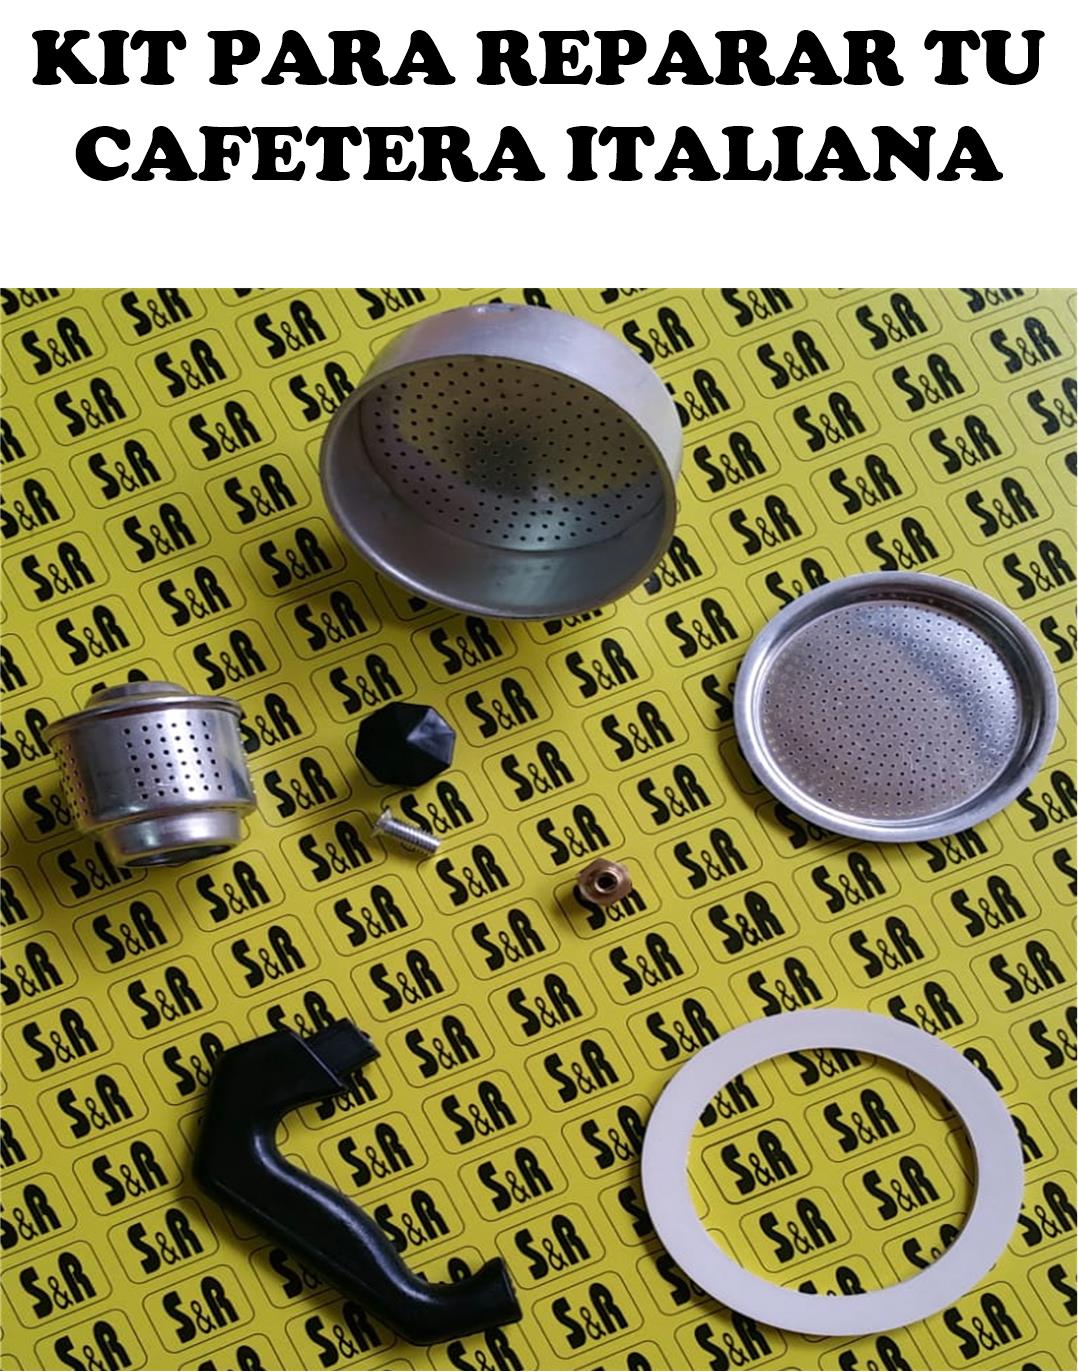 ITALIAN CAFFEE MAKER REPAIR KIT